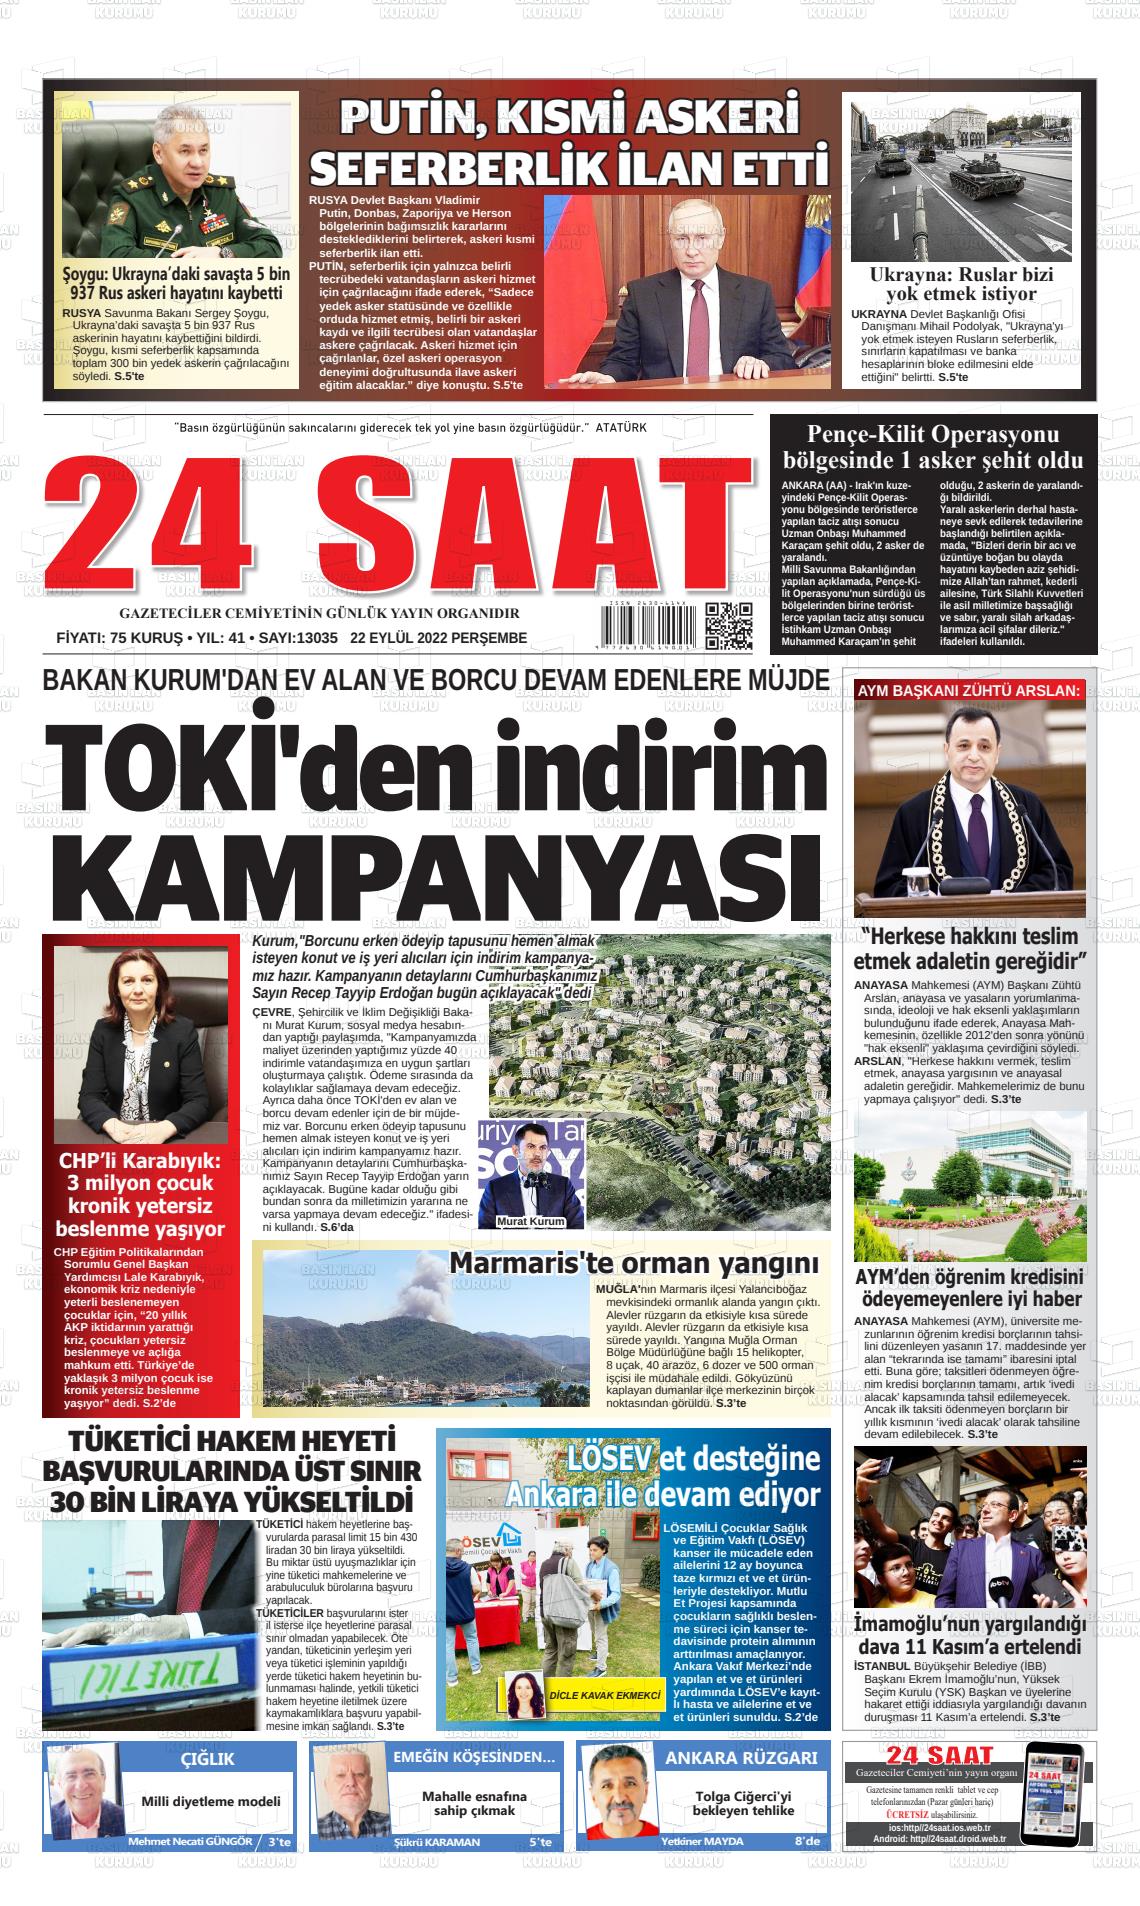 22 Eylül 2022 24 Saat Gazete Manşeti